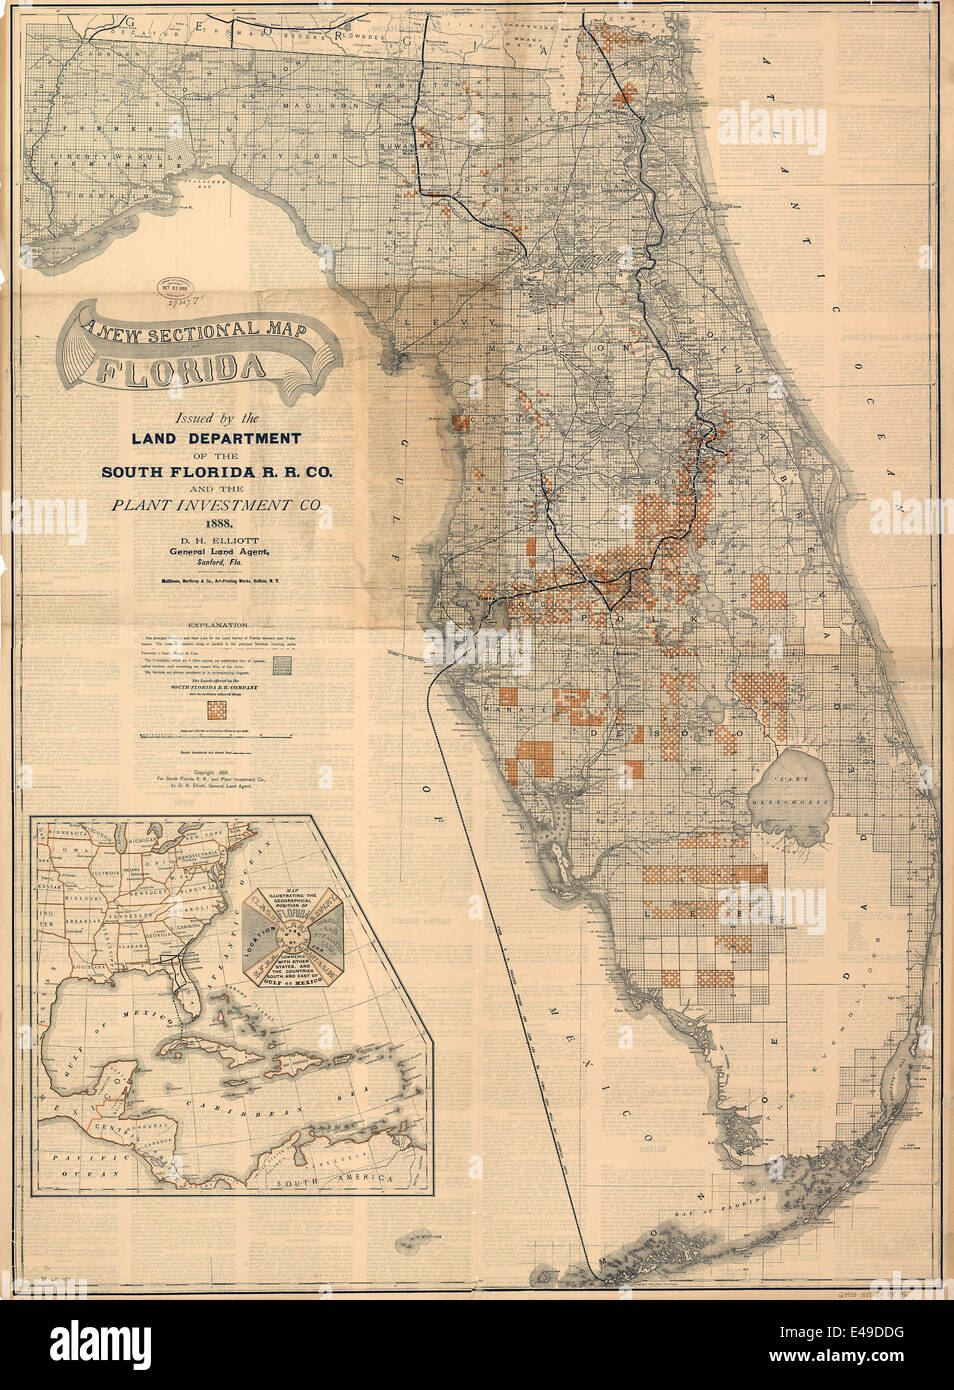 Un nuevo mapa seccional de la Florida emitida por el departamento de tierras del sur de la Florida R. R. Co. y la planta 1888 Investment Co. Foto de stock